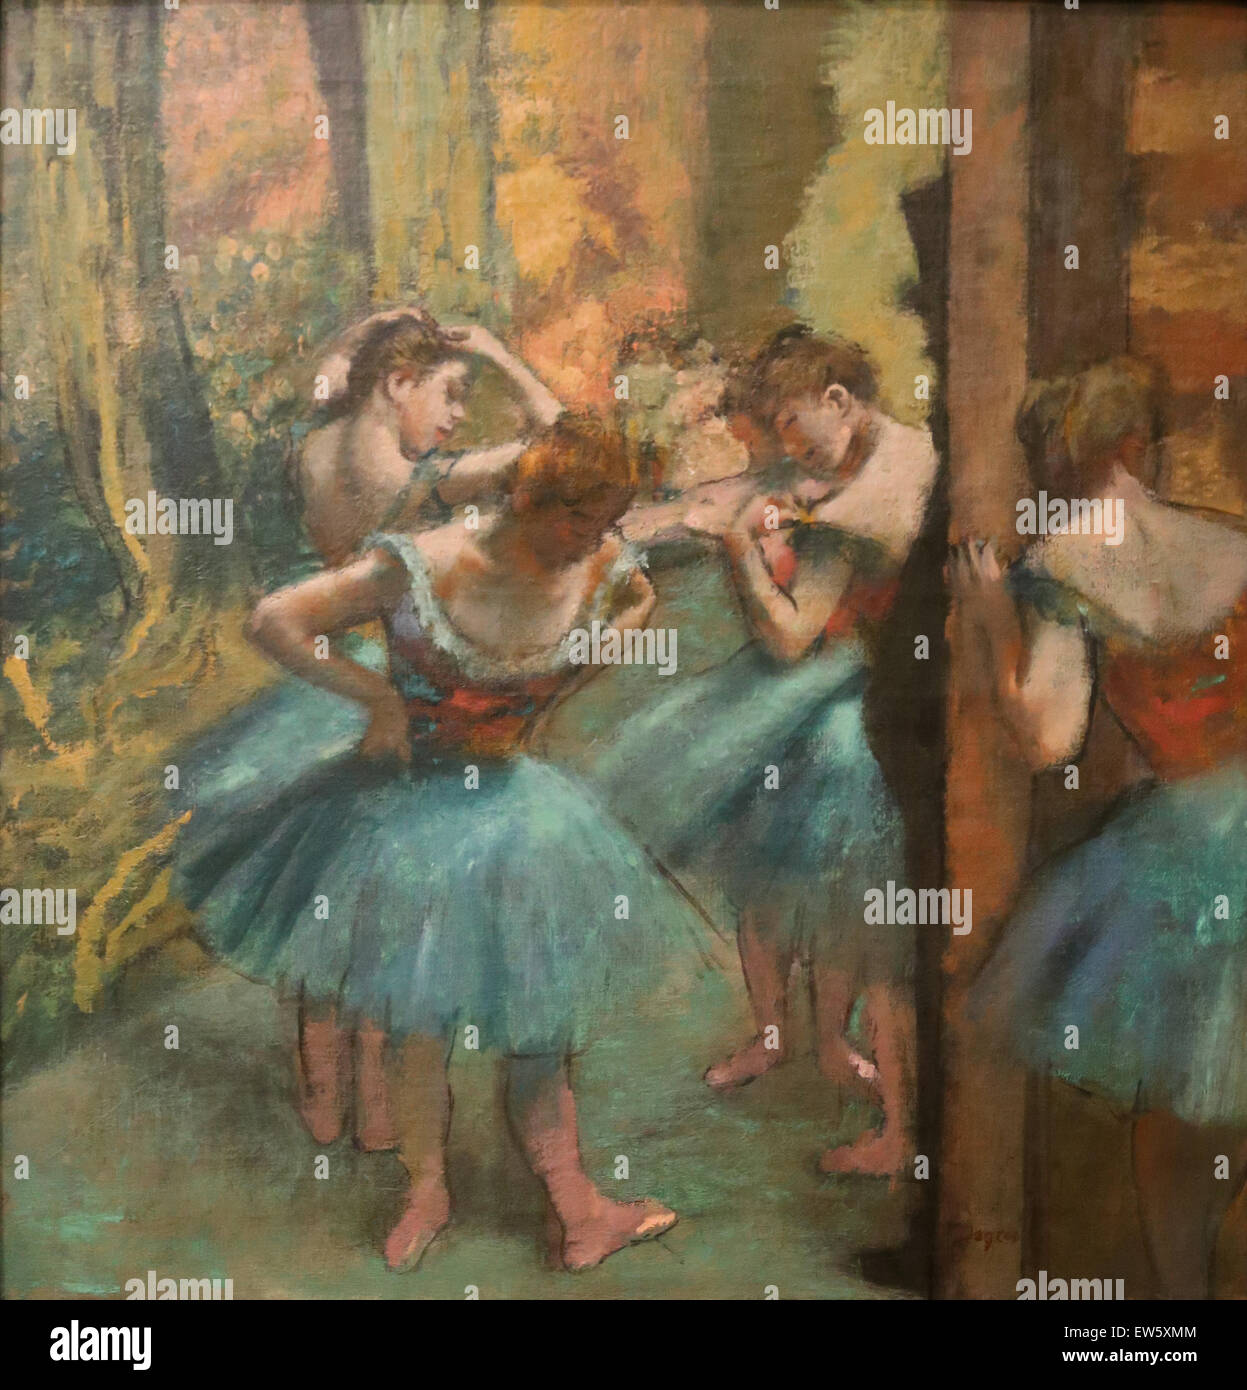 Edgar Degas (1834-1917). Französischer Maler. Tänzer, Pink und grün, ca. 1890. Öl auf Leinwand. Metropolitan Museum of Art. NY. USA. Stockfoto